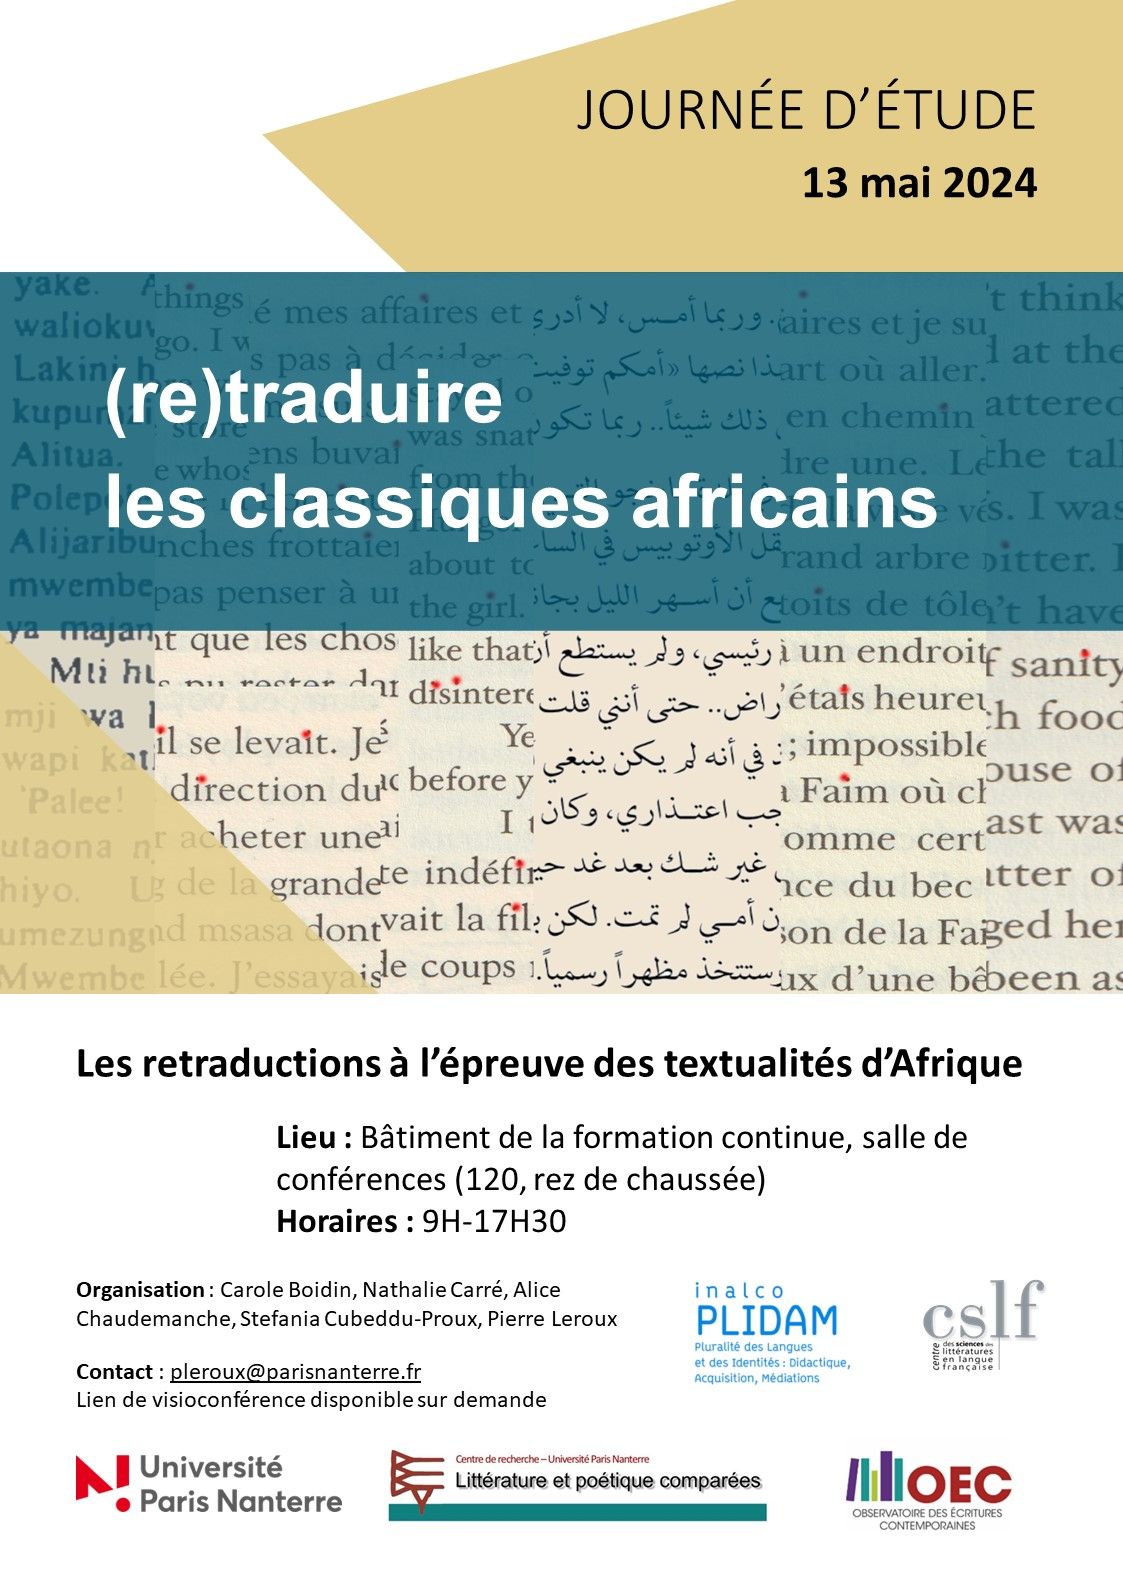 (Re)traduire les classiques africains : Les retraductions à l'épreuve des textualités d'Afrique (Paris Nanterre)